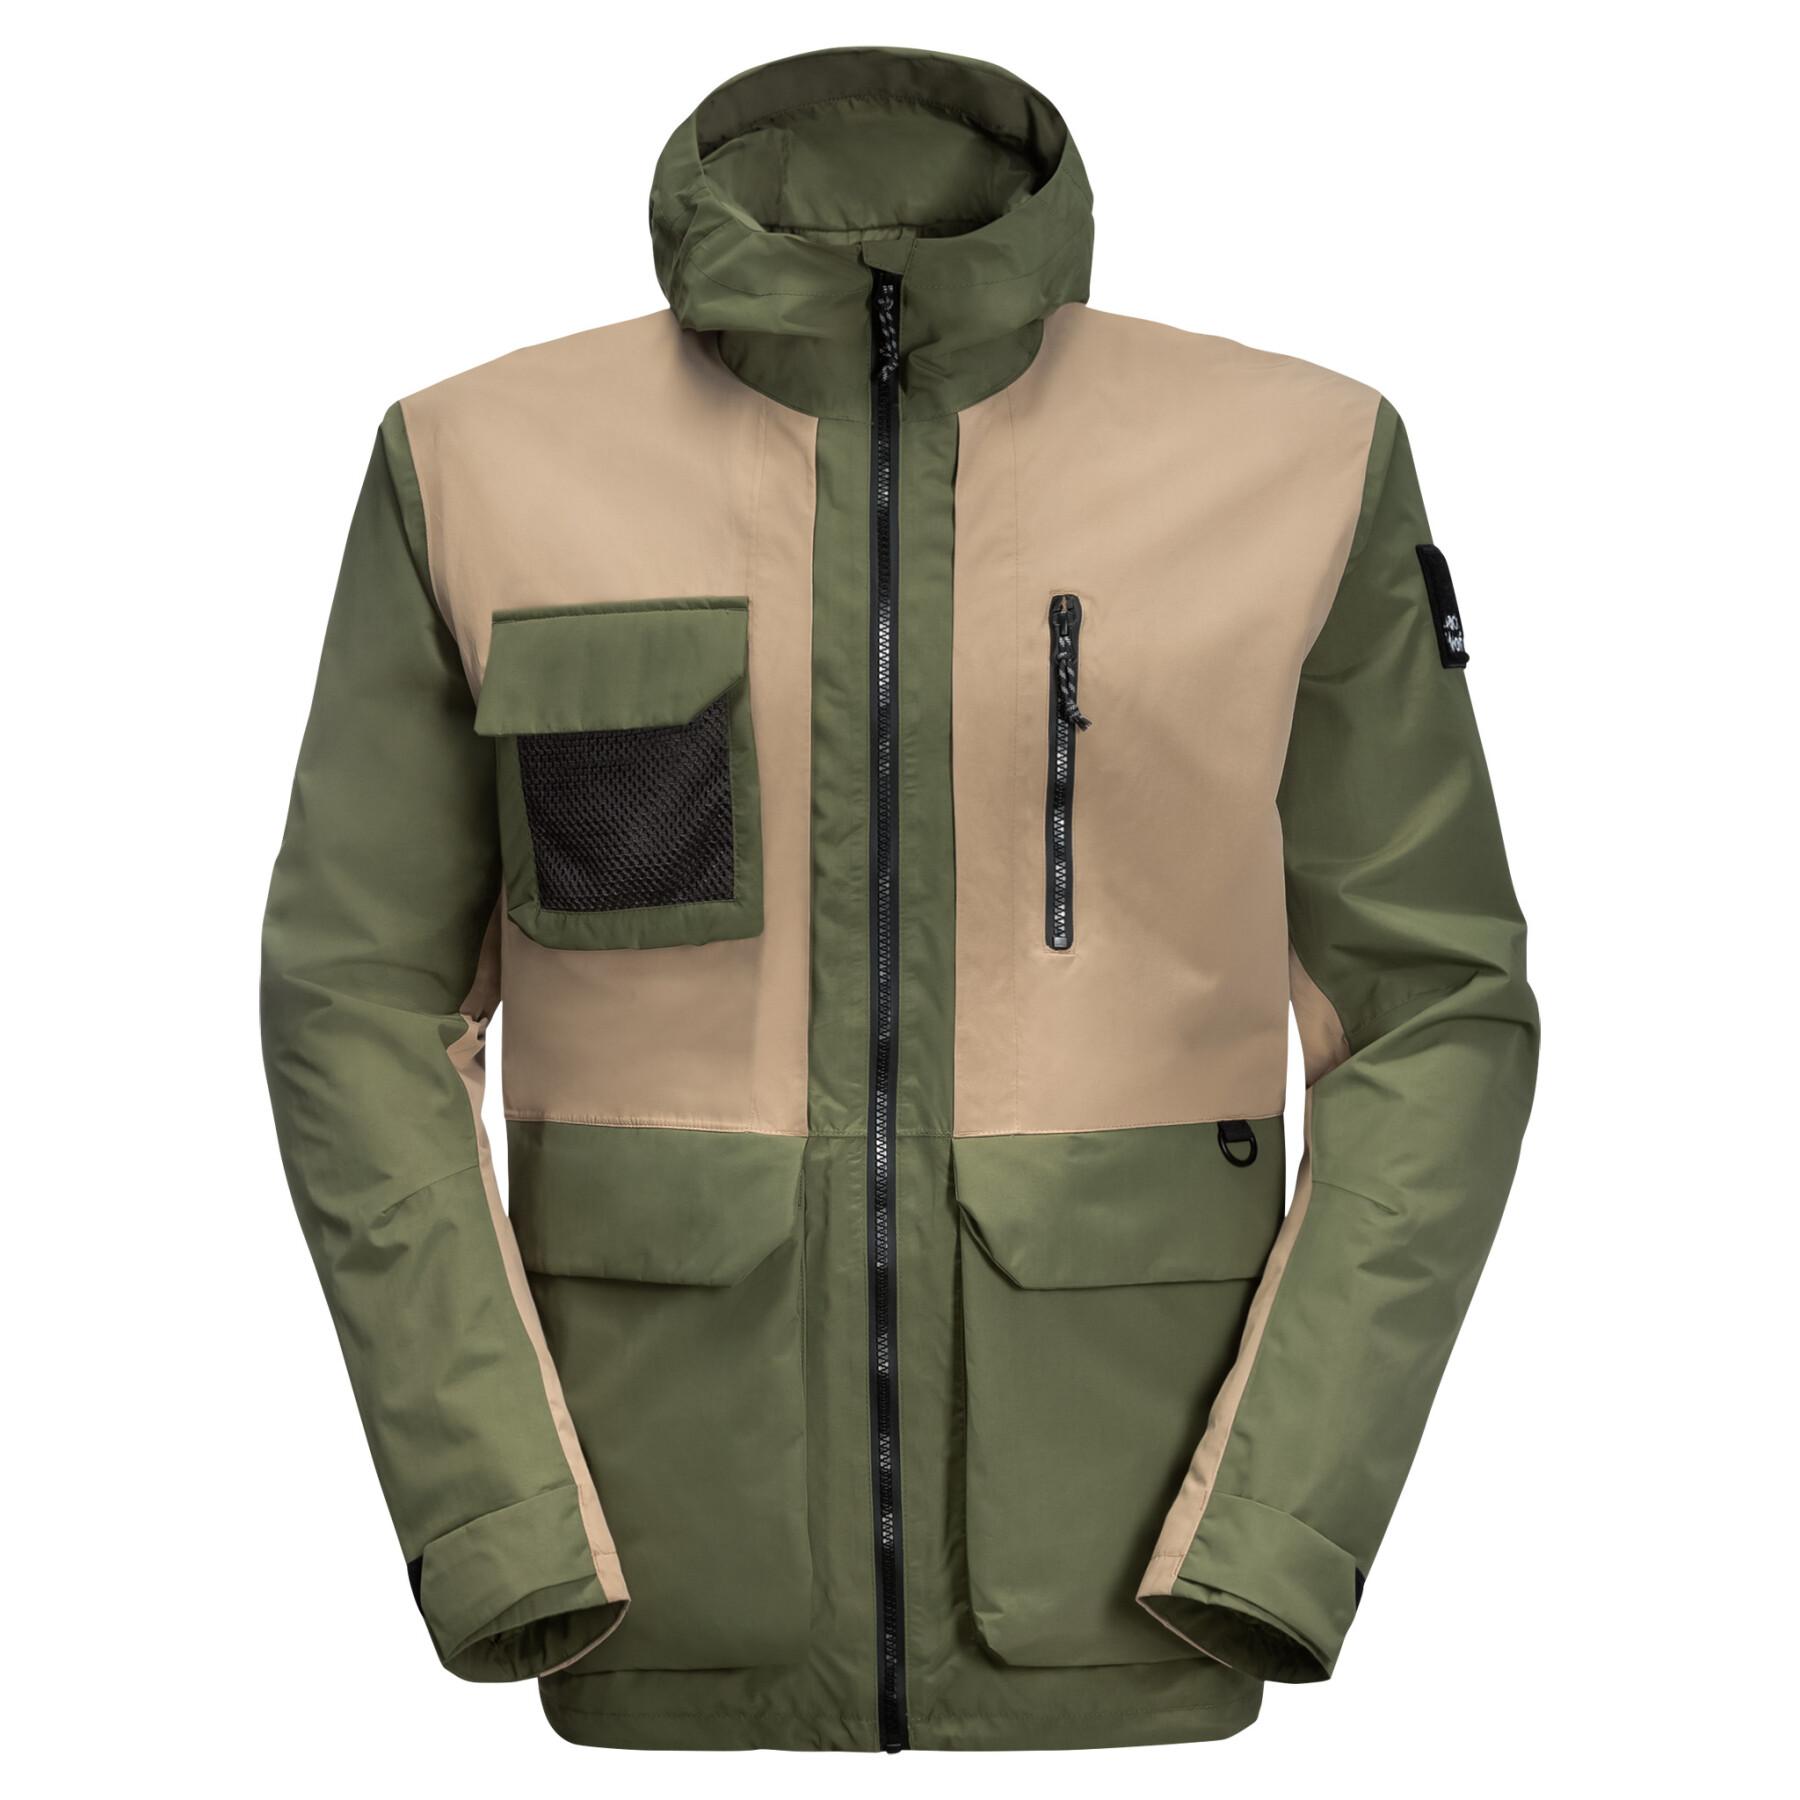 Waterproof jacket Jack Wolfskin 365 Rebel